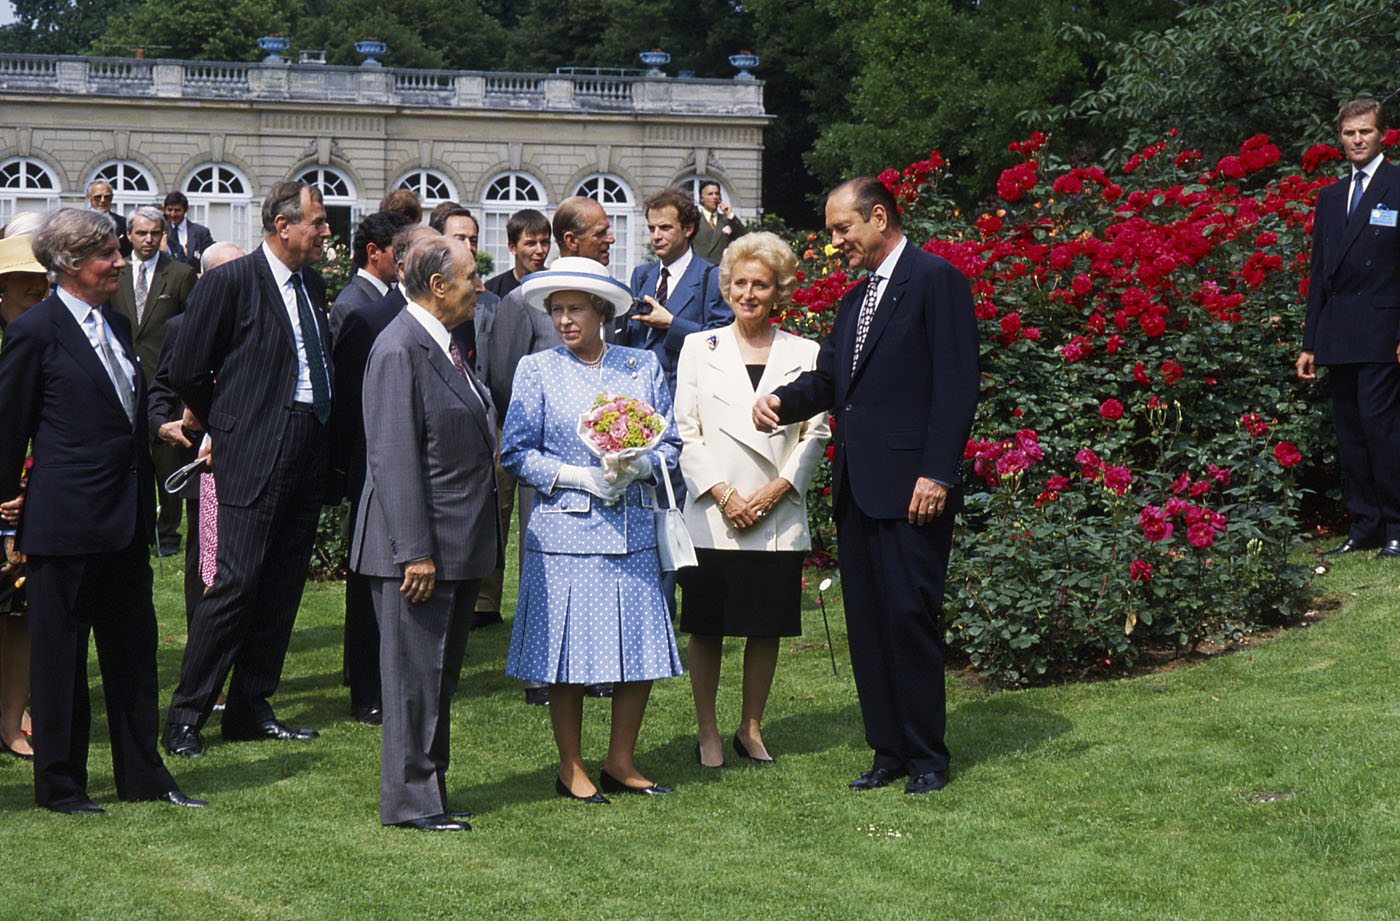 Visite du parc de Bagatelle avec la reine d'Angleterre  diapo archivée aux Archives de Paris